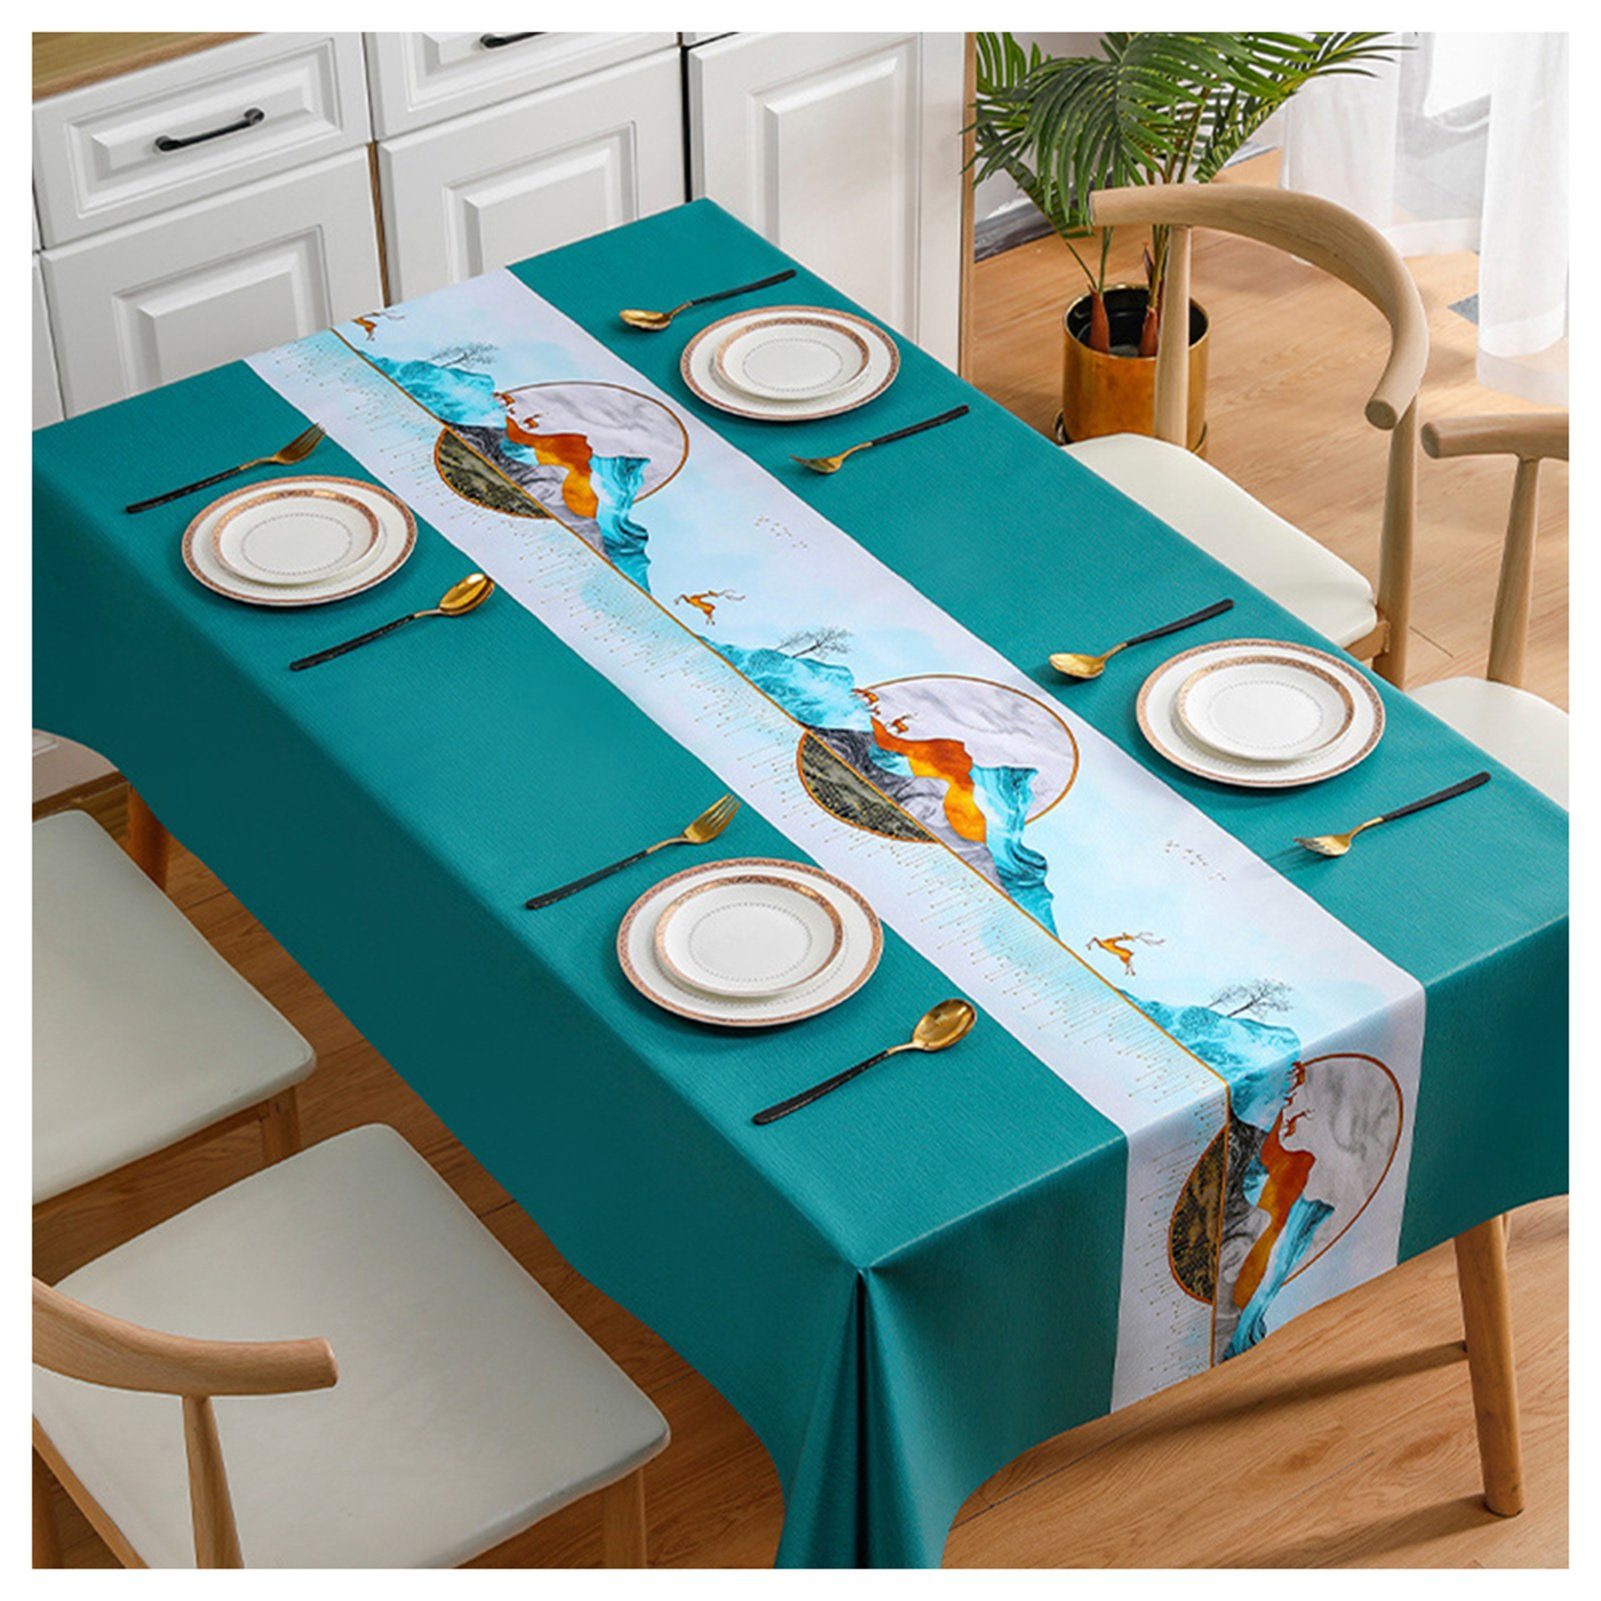 Tischschonbezug Haushalt Stil PVC Farbe Blusmart Druck Europäischen Tischdecke